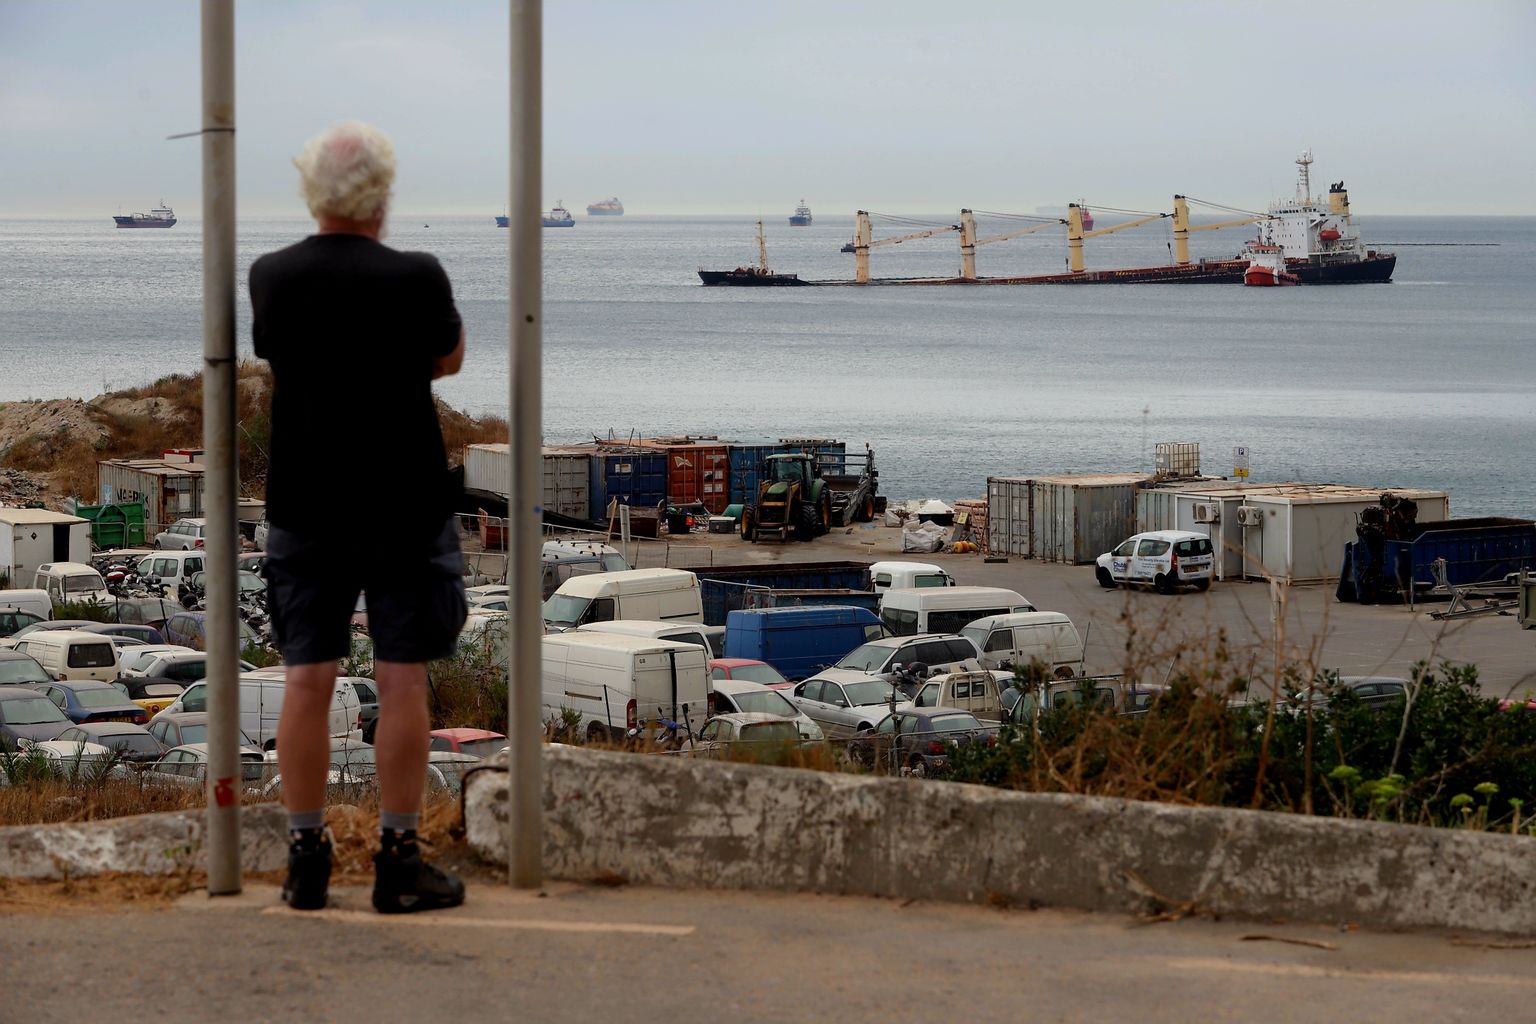 Uppumise vältimiseks Catalan Bay madalasse osasse pukseeritud, kuid pooleks murdunud kaubalaeva OS 35 vrakist hakkas naftat lekkima.